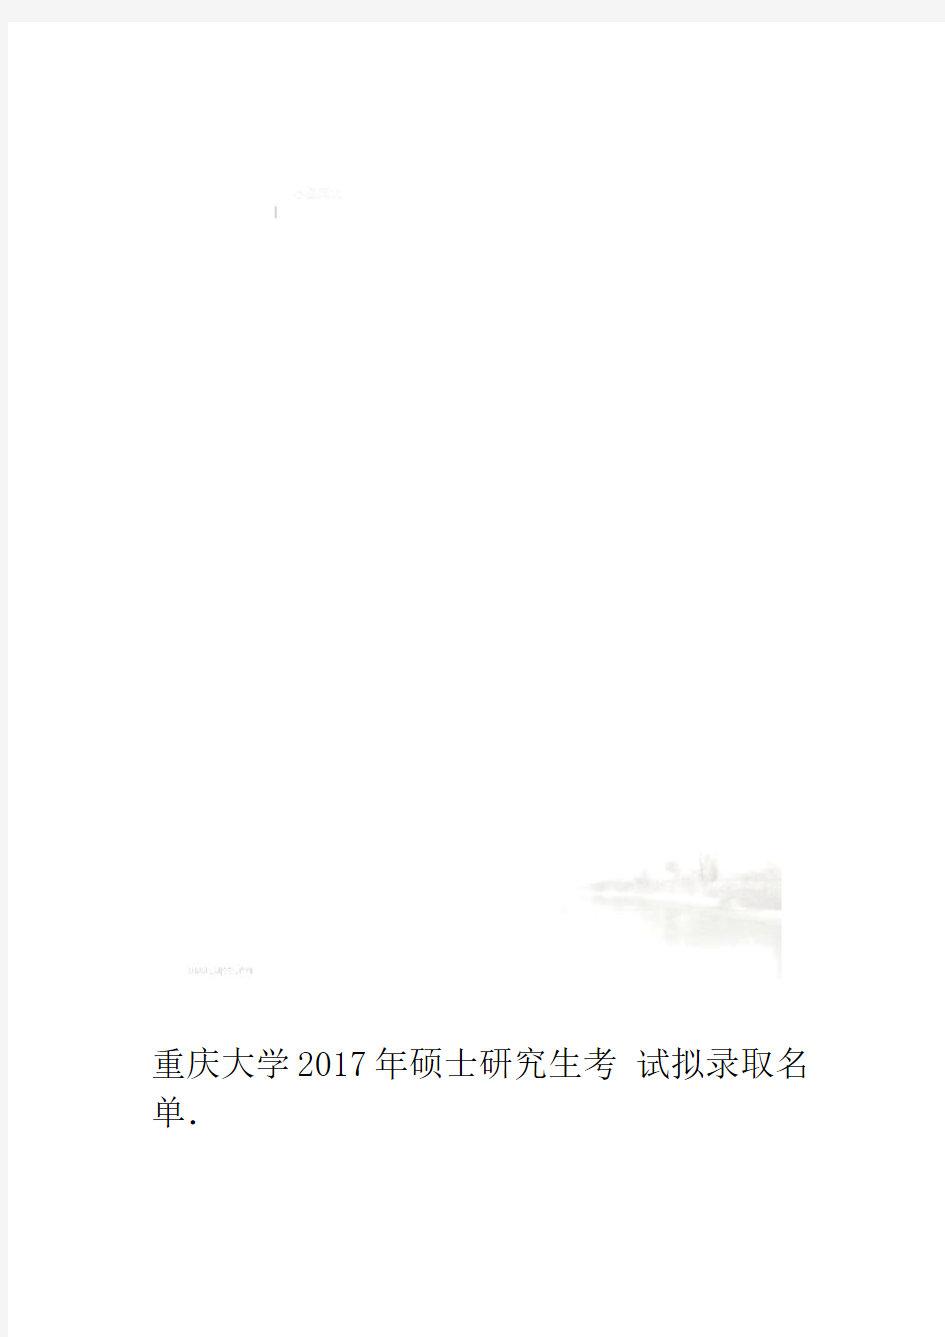 重庆大学2017年硕士研究生考试拟录取名单